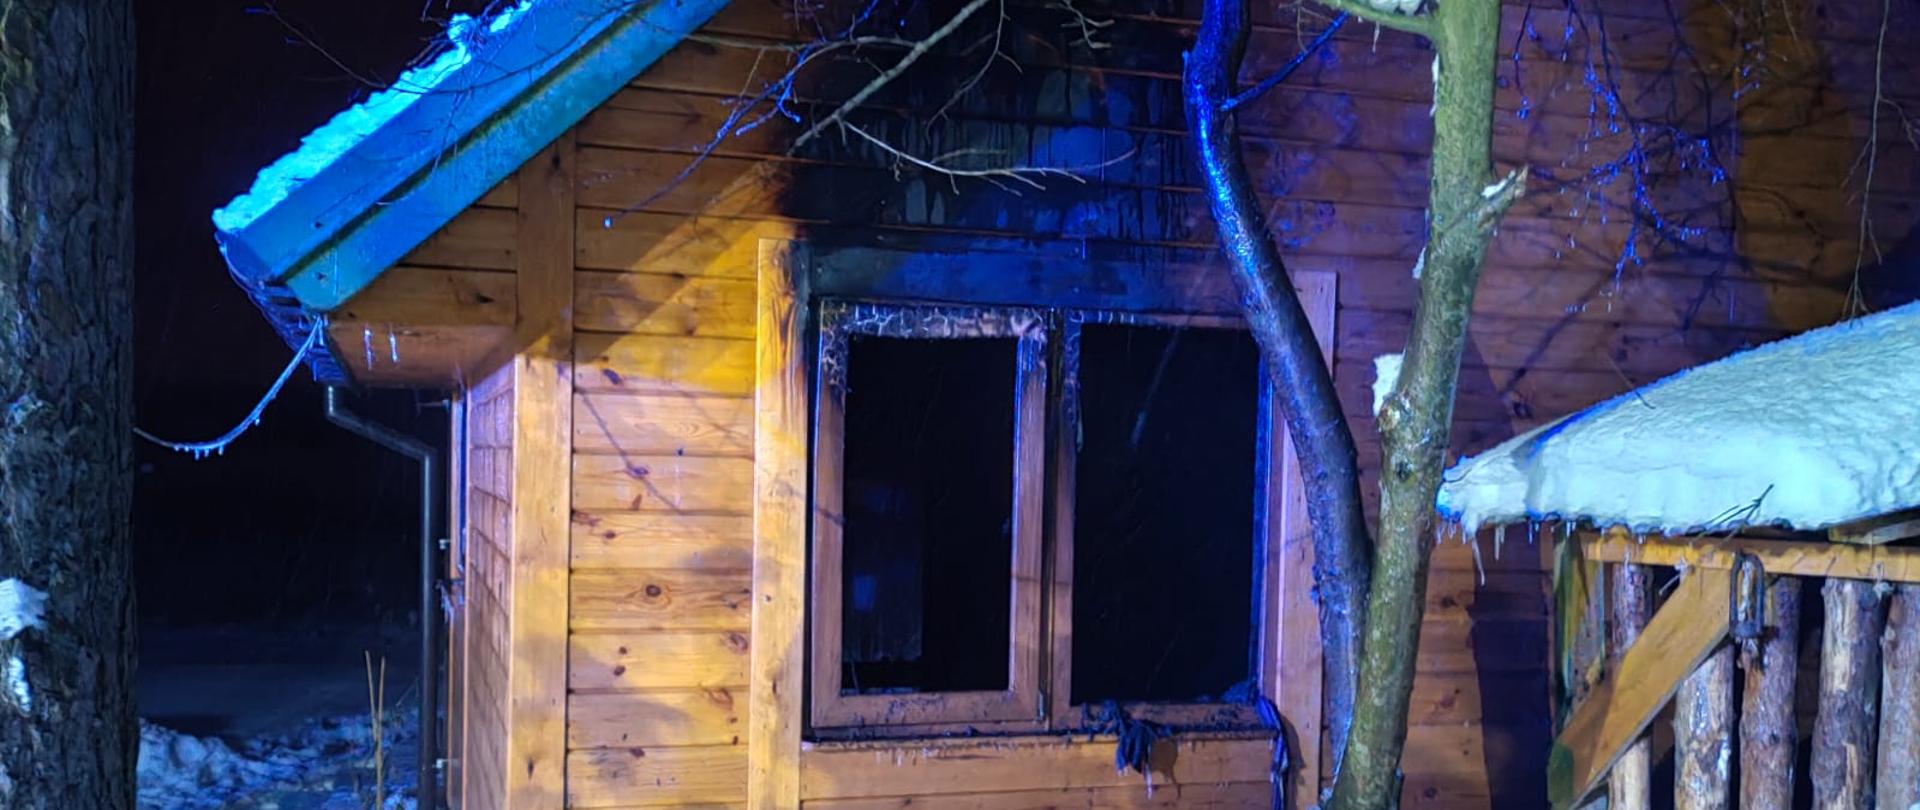 Na zdjęciu widoczny drewniany domek i nadpalone okno przez które wychodziły wcześniej płomienie. 